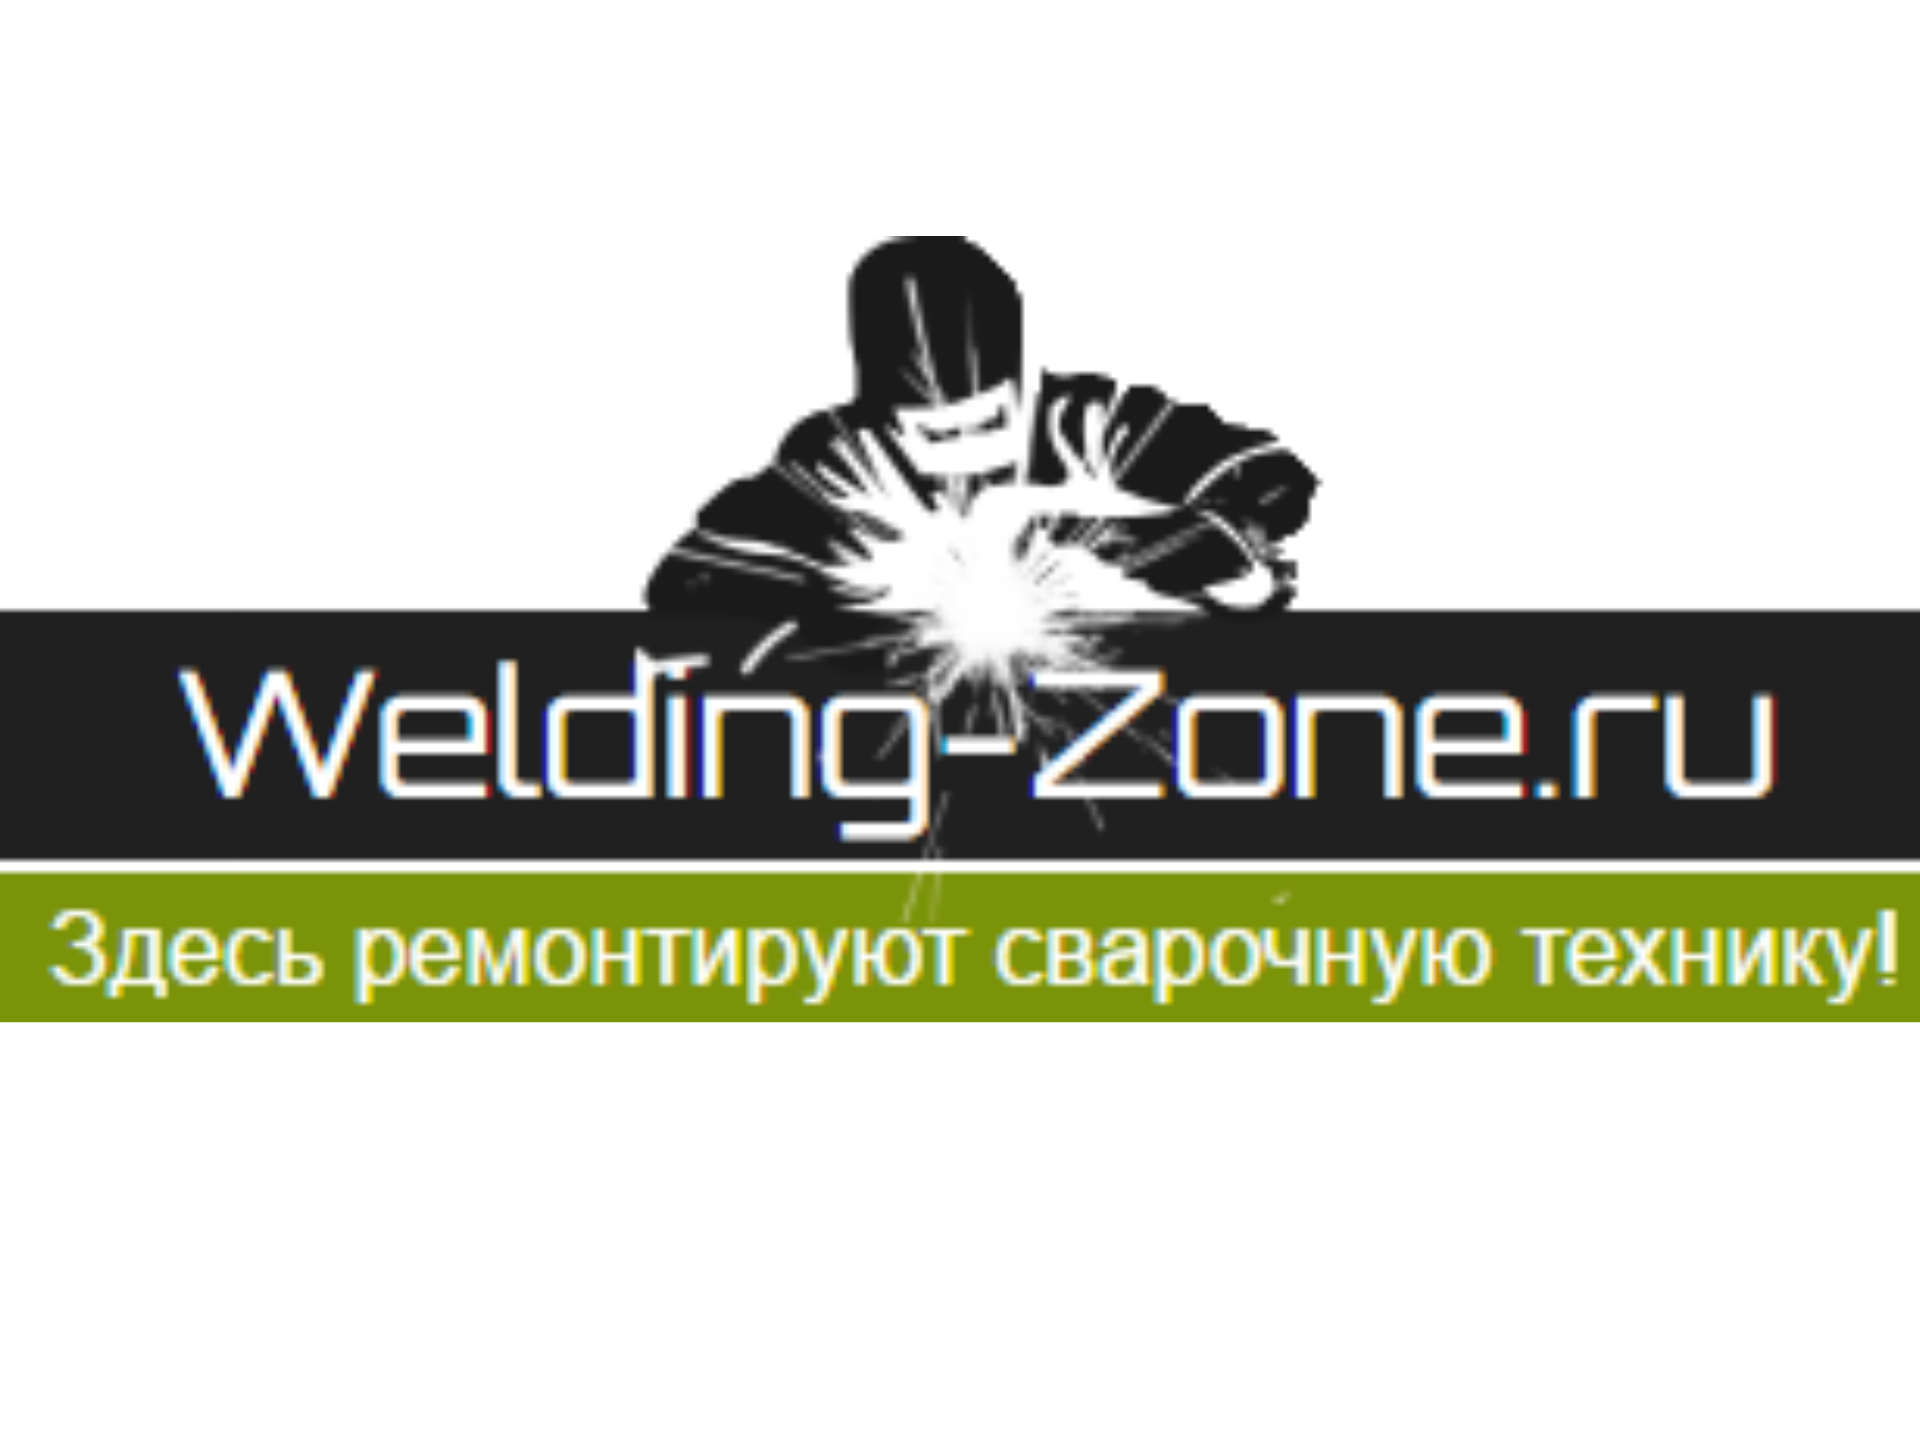 ООО "Зона-Сварки" - Город Санкт-Петербург лого WZ-223.png